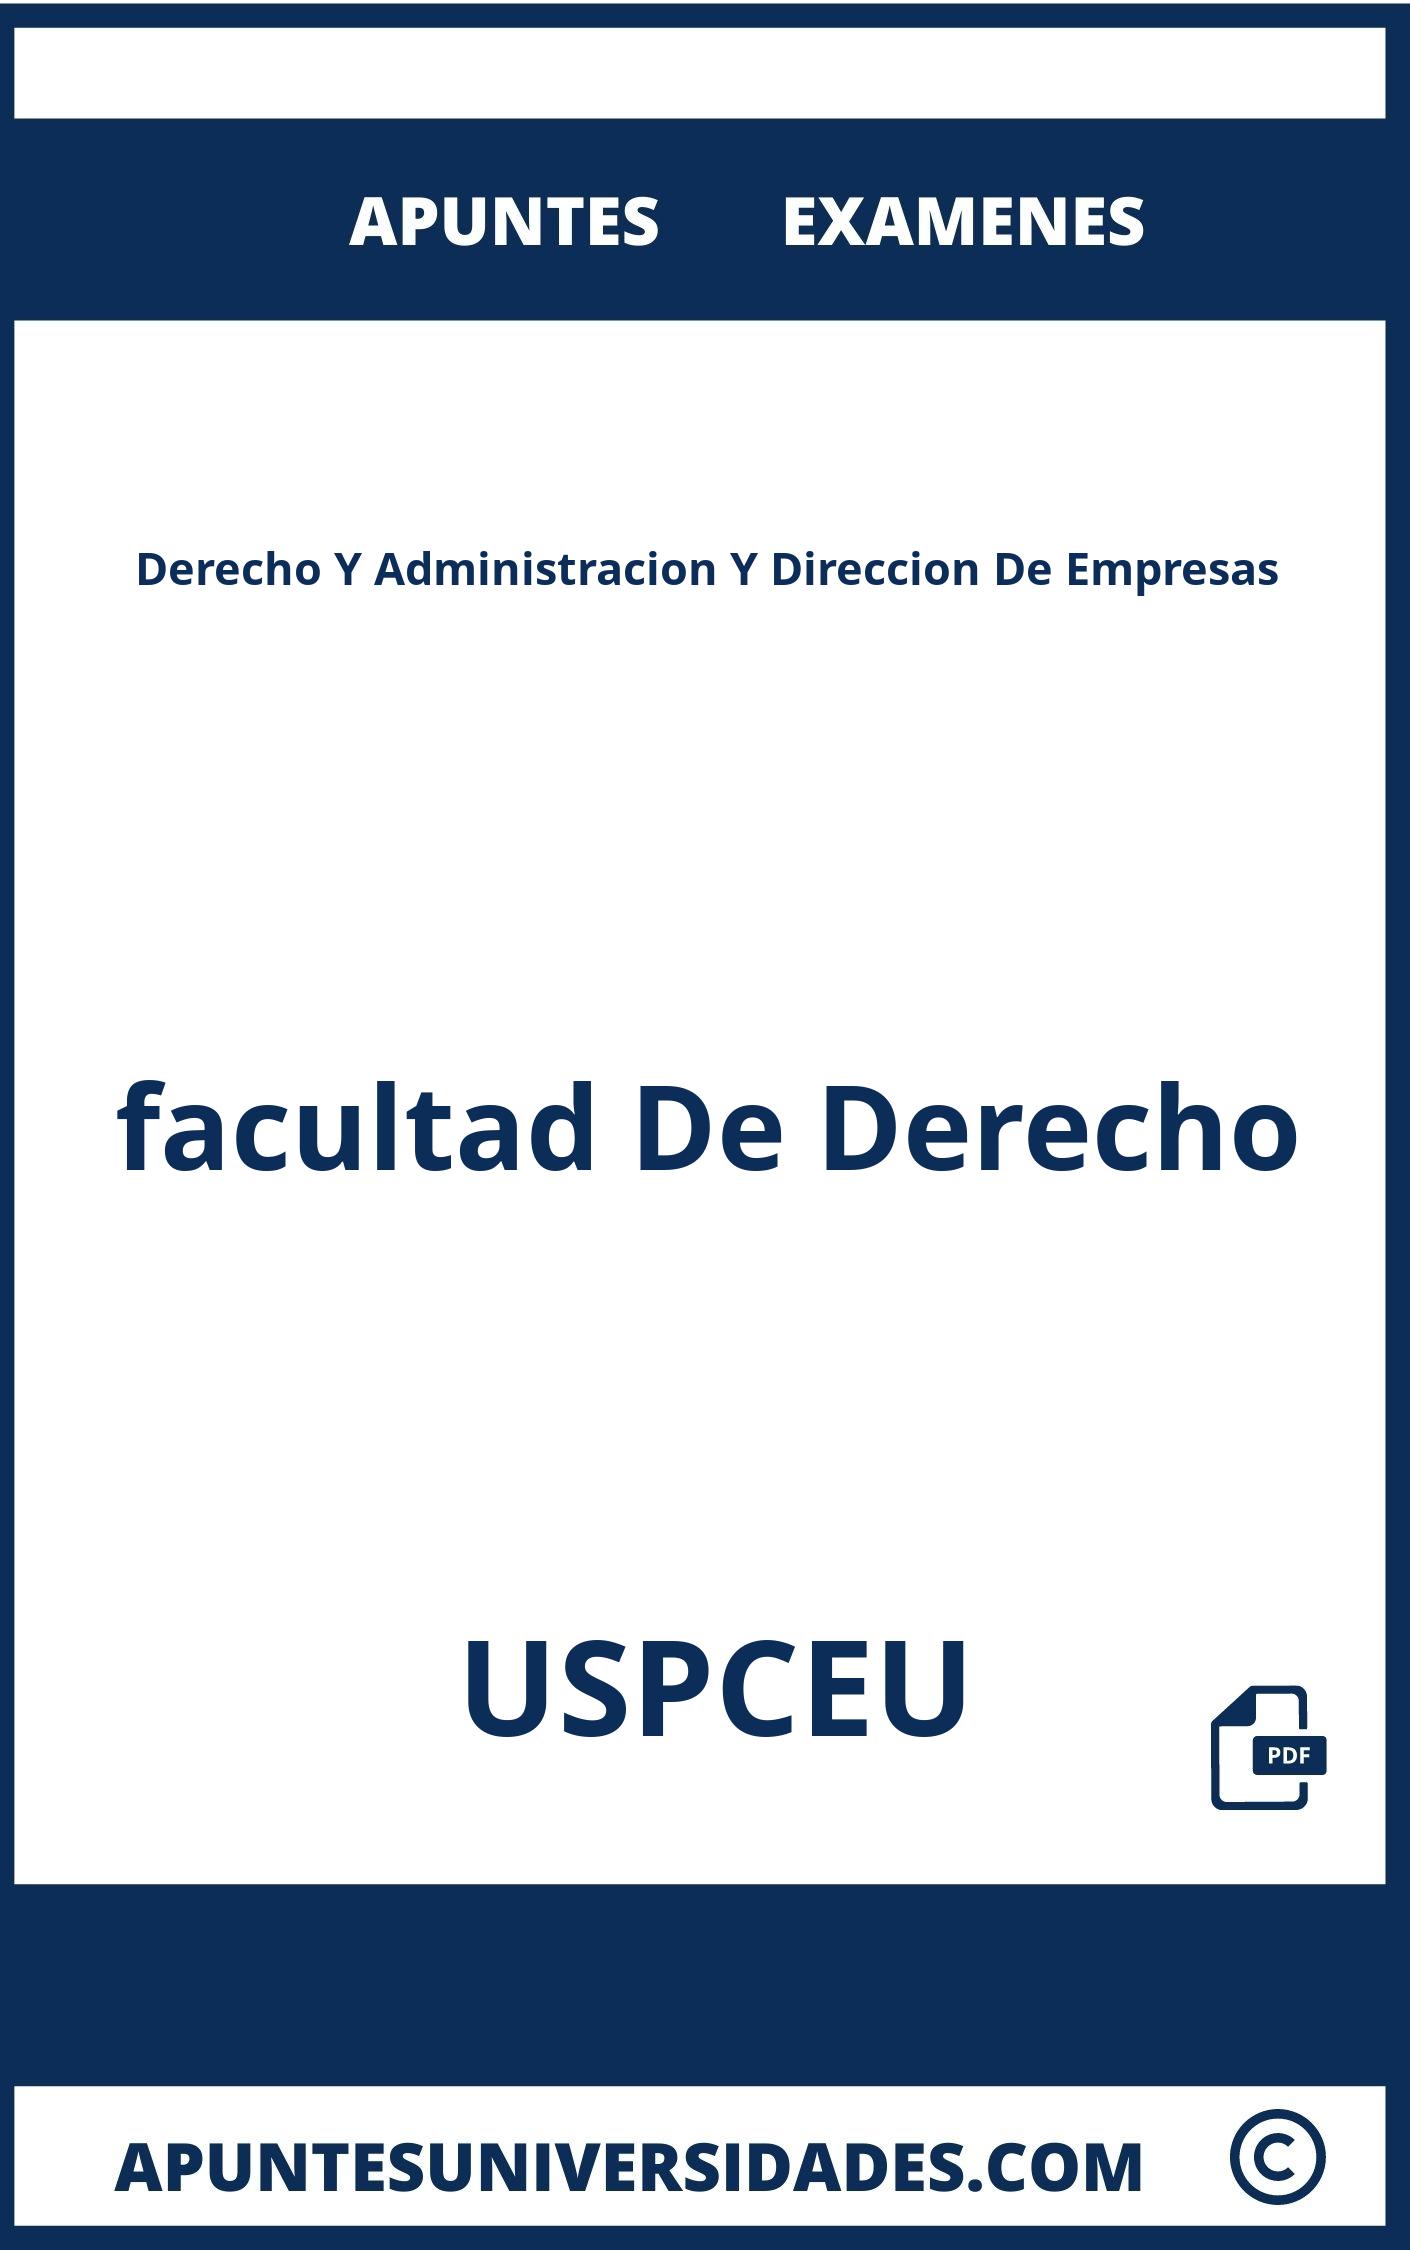 Examenes y Apuntes Derecho Y Administracion Y Direccion De Empresas USPCEU